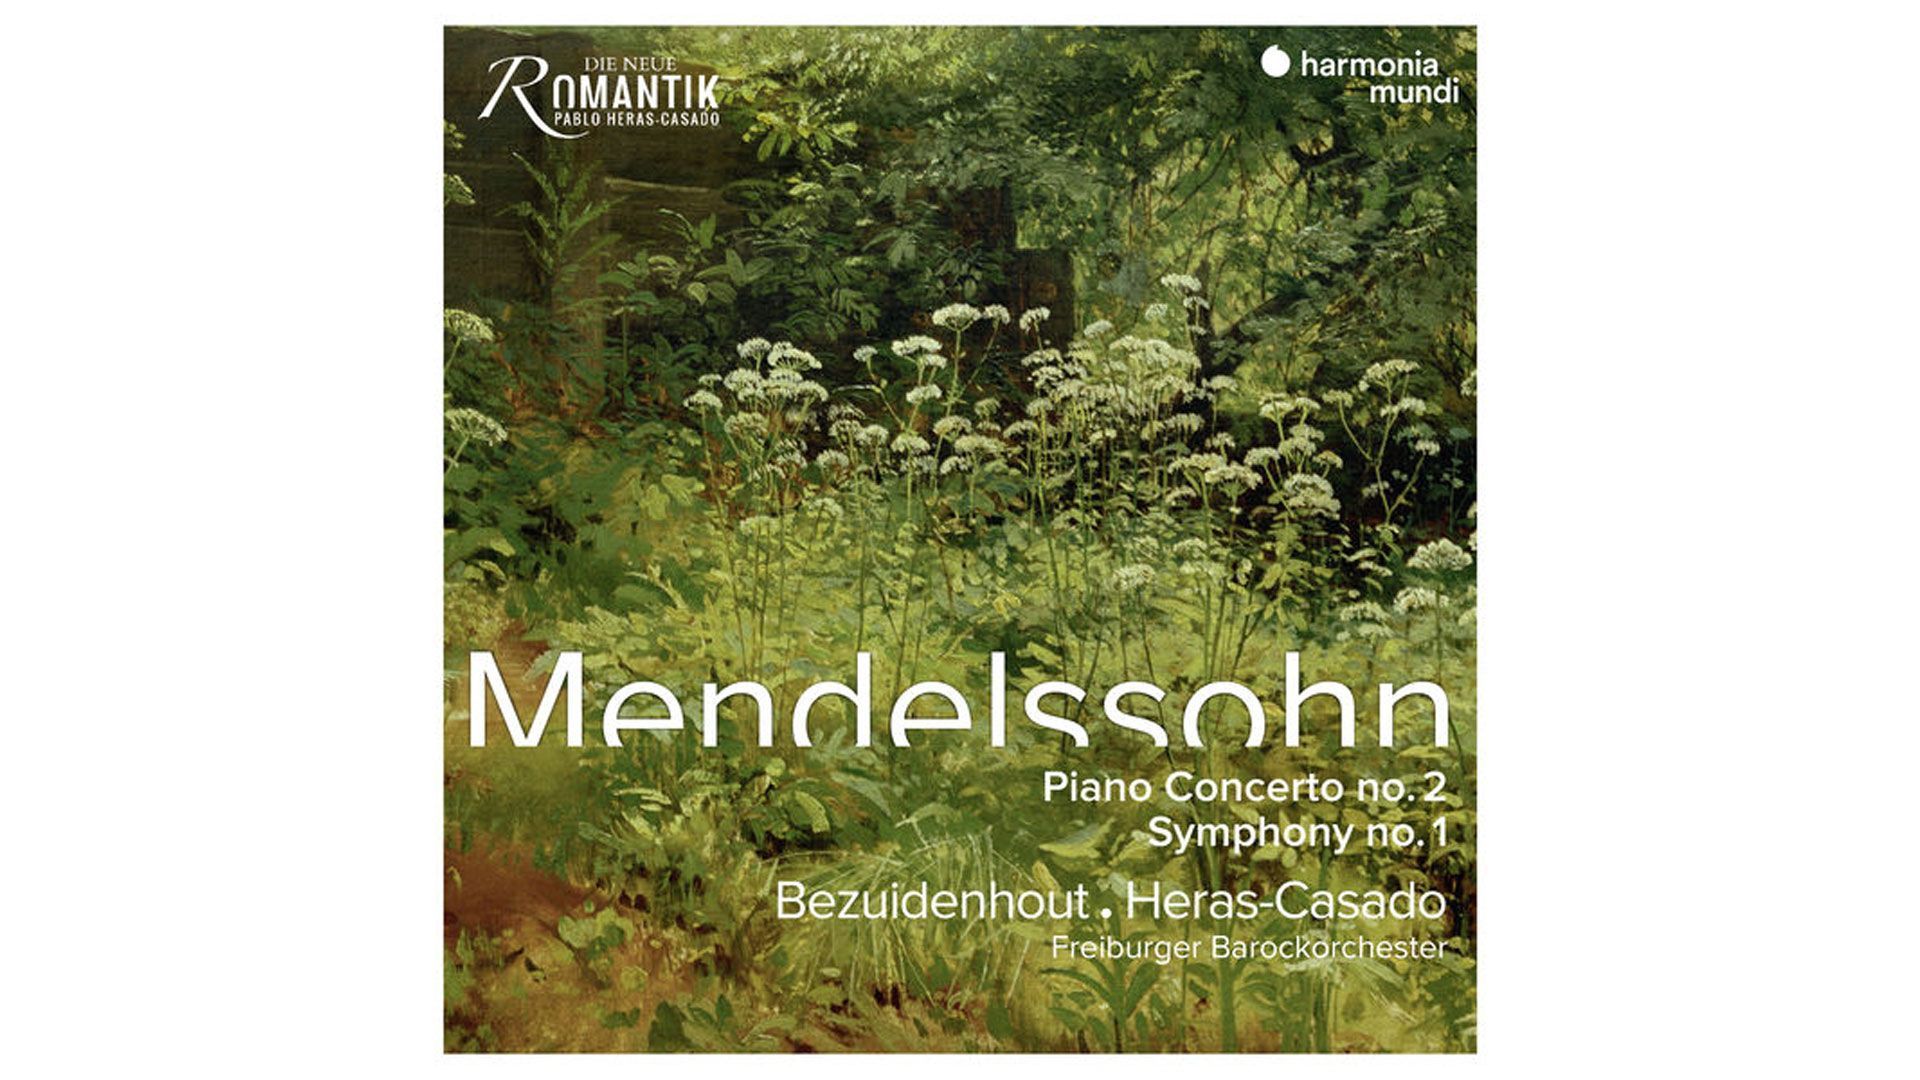 Mendelssohn, Symphonie n° 1 et concerto pour piano n° 2 - Pablo Heras-Casado et Kristian Bezuidenhout